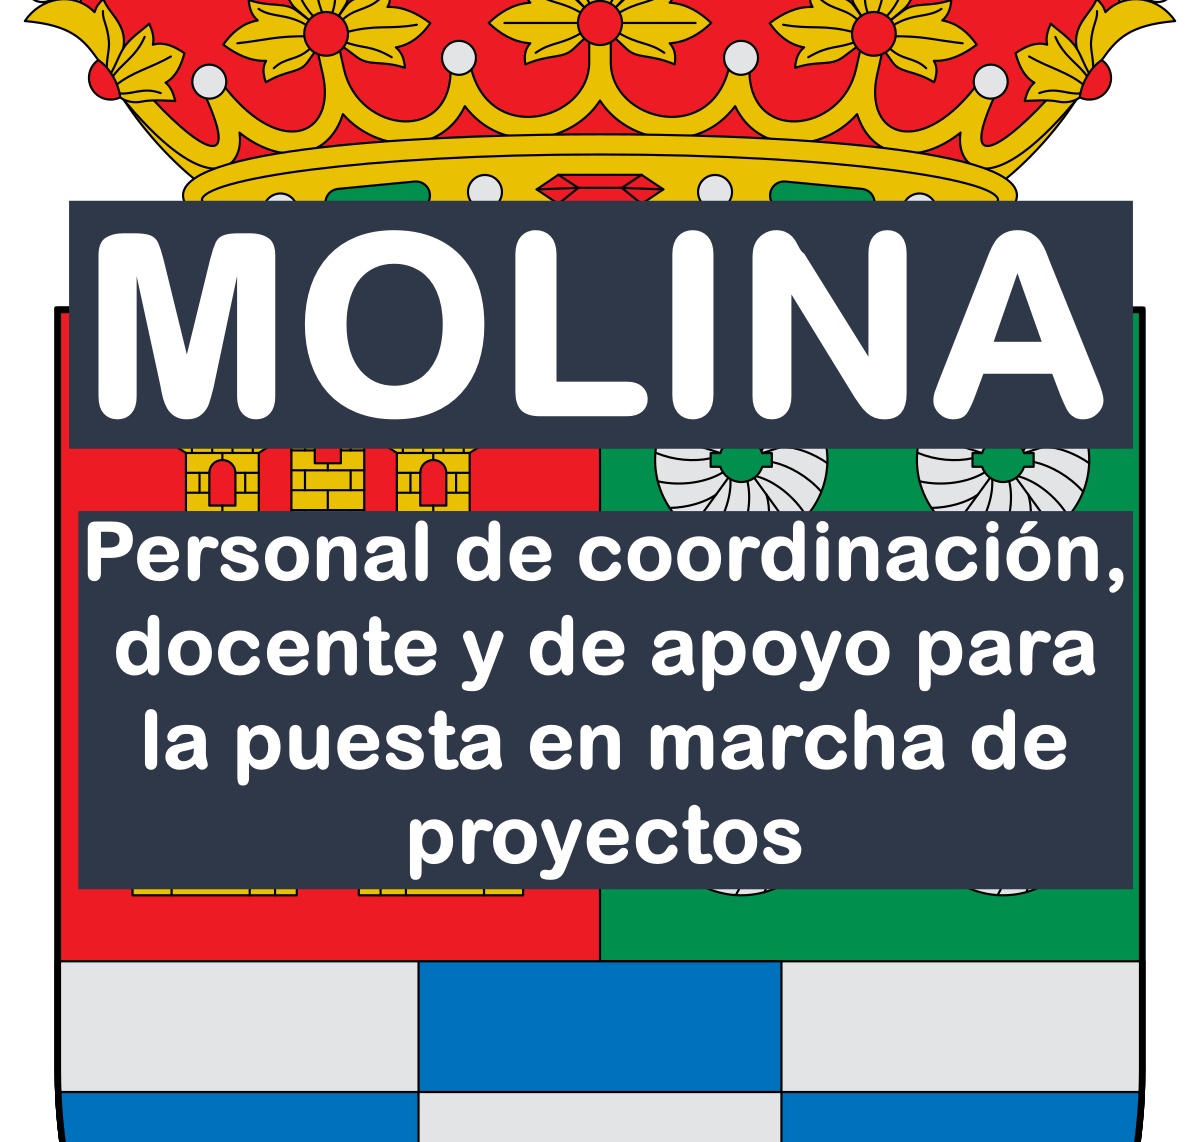 Personal para la puesta en marcha de proyectos en Molina